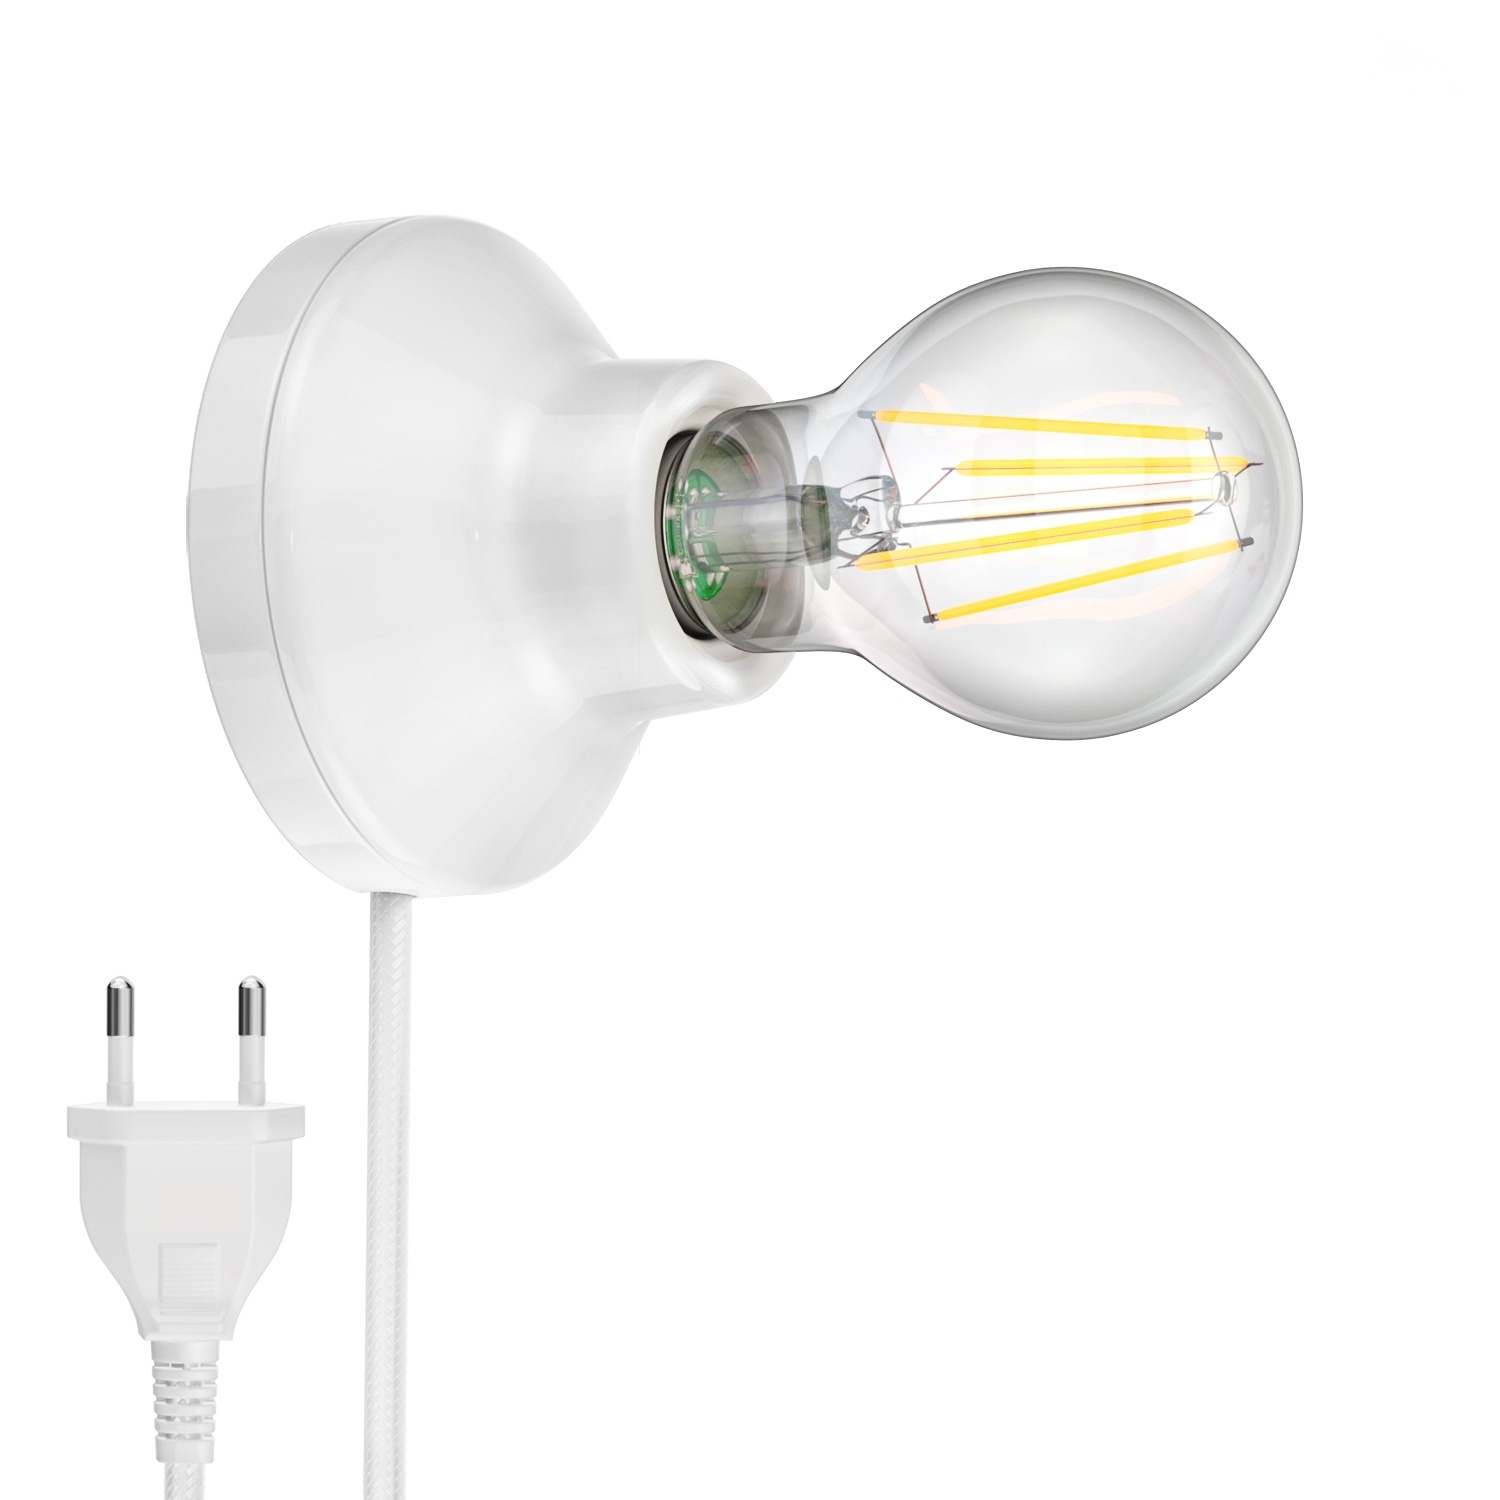 ledscom.de Porzellan Wand-Leuchte Elektra rund Stecker Schalter weiß 90mm + E27 LED Lampe warmweiß 3-Stufen Dimmen: max. 963lm